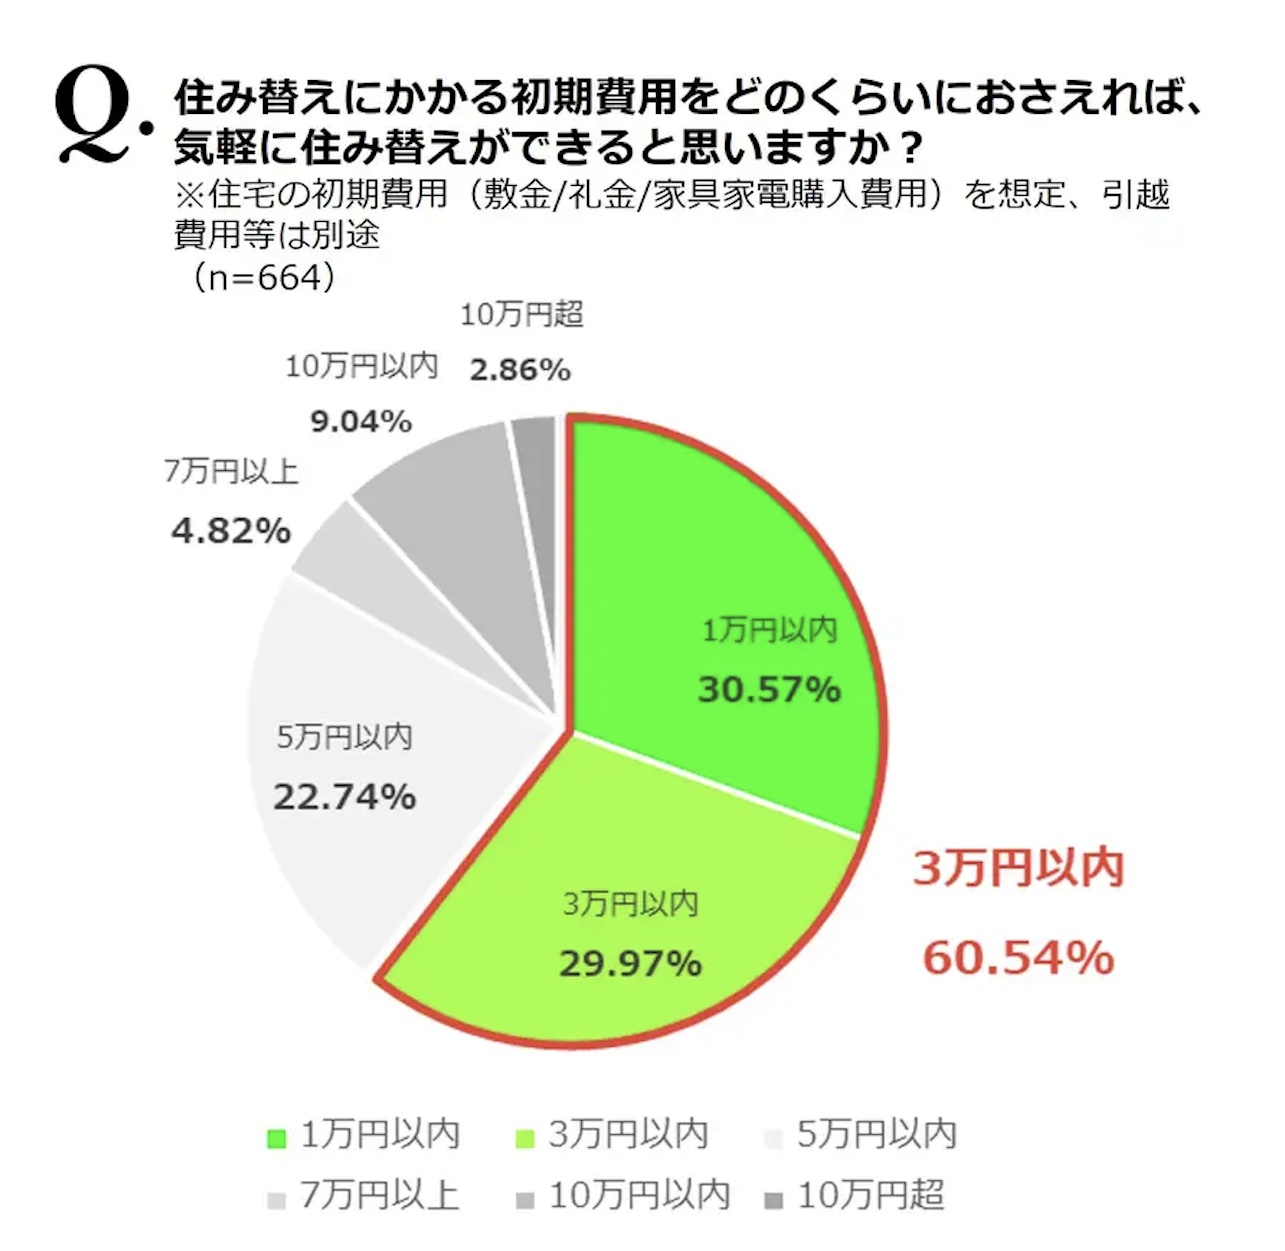 初期費用の希望額について、60%以上が「3万円台」と答えている